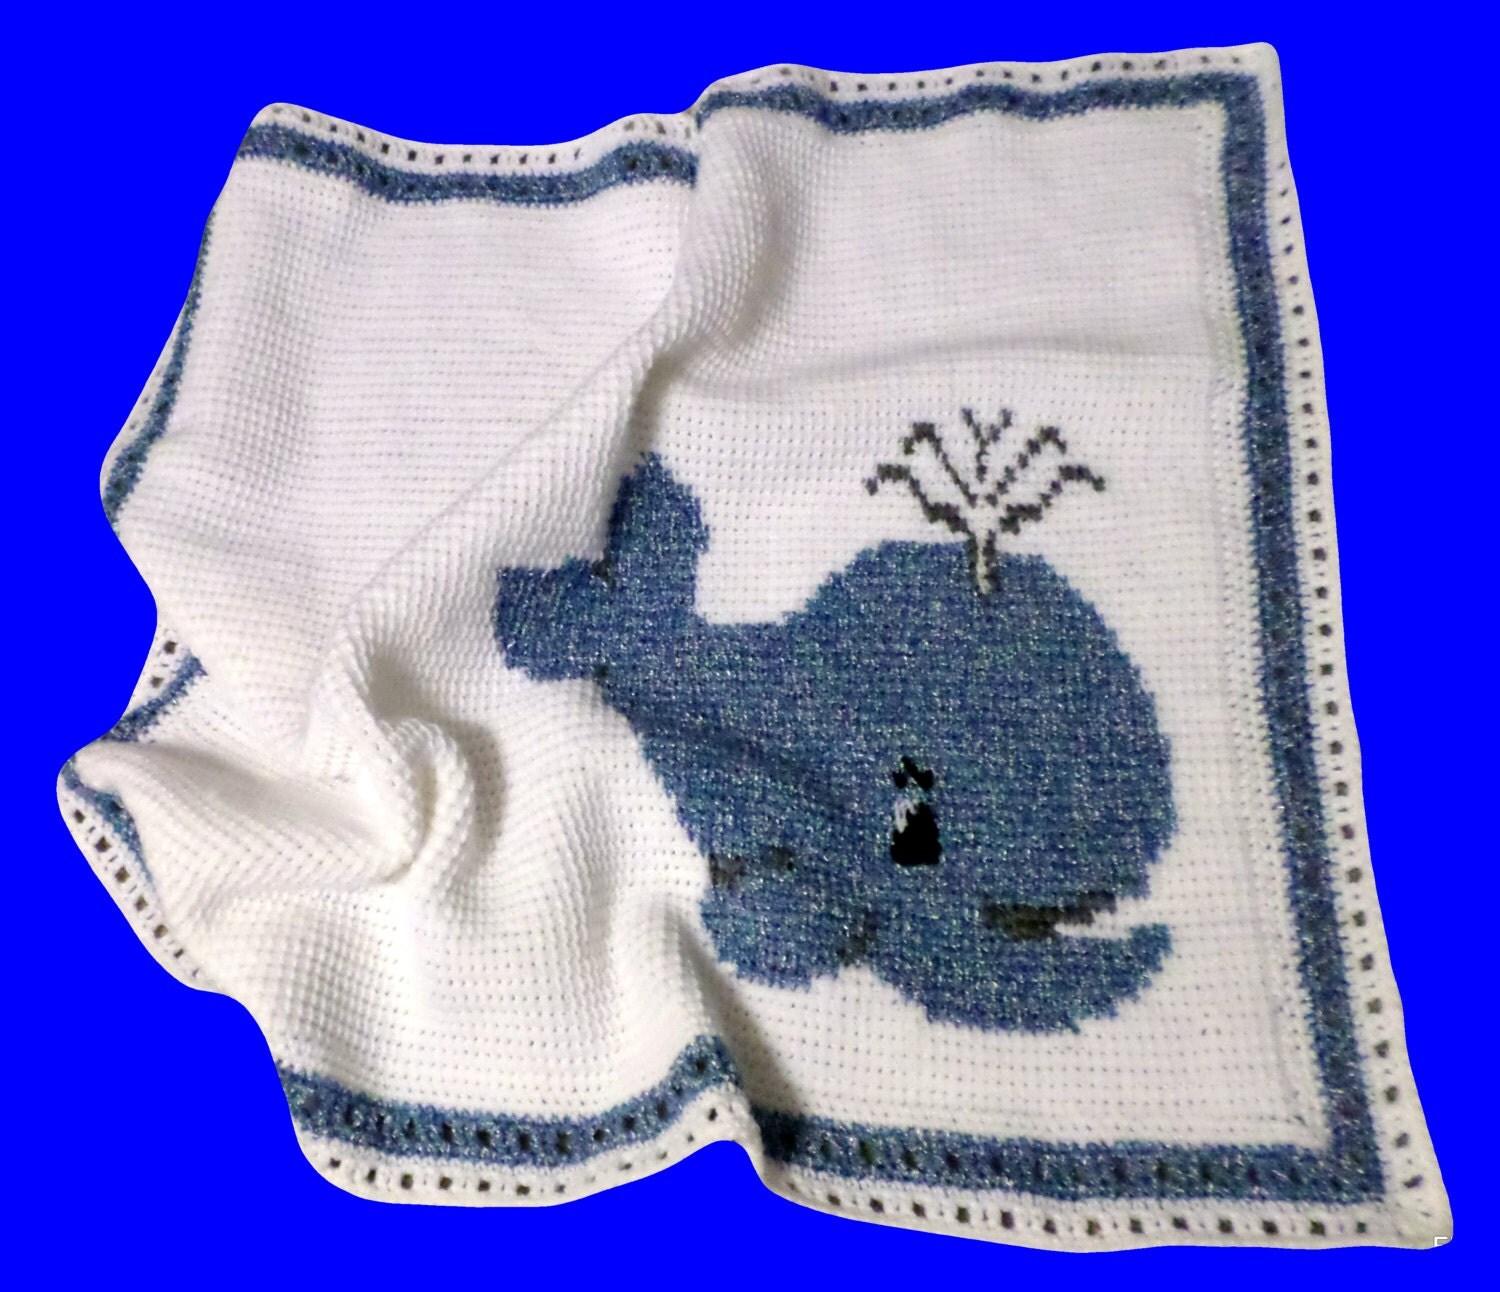 Whale Blanket / Baby Nap Blanket / Crochet Blanket / Crochet